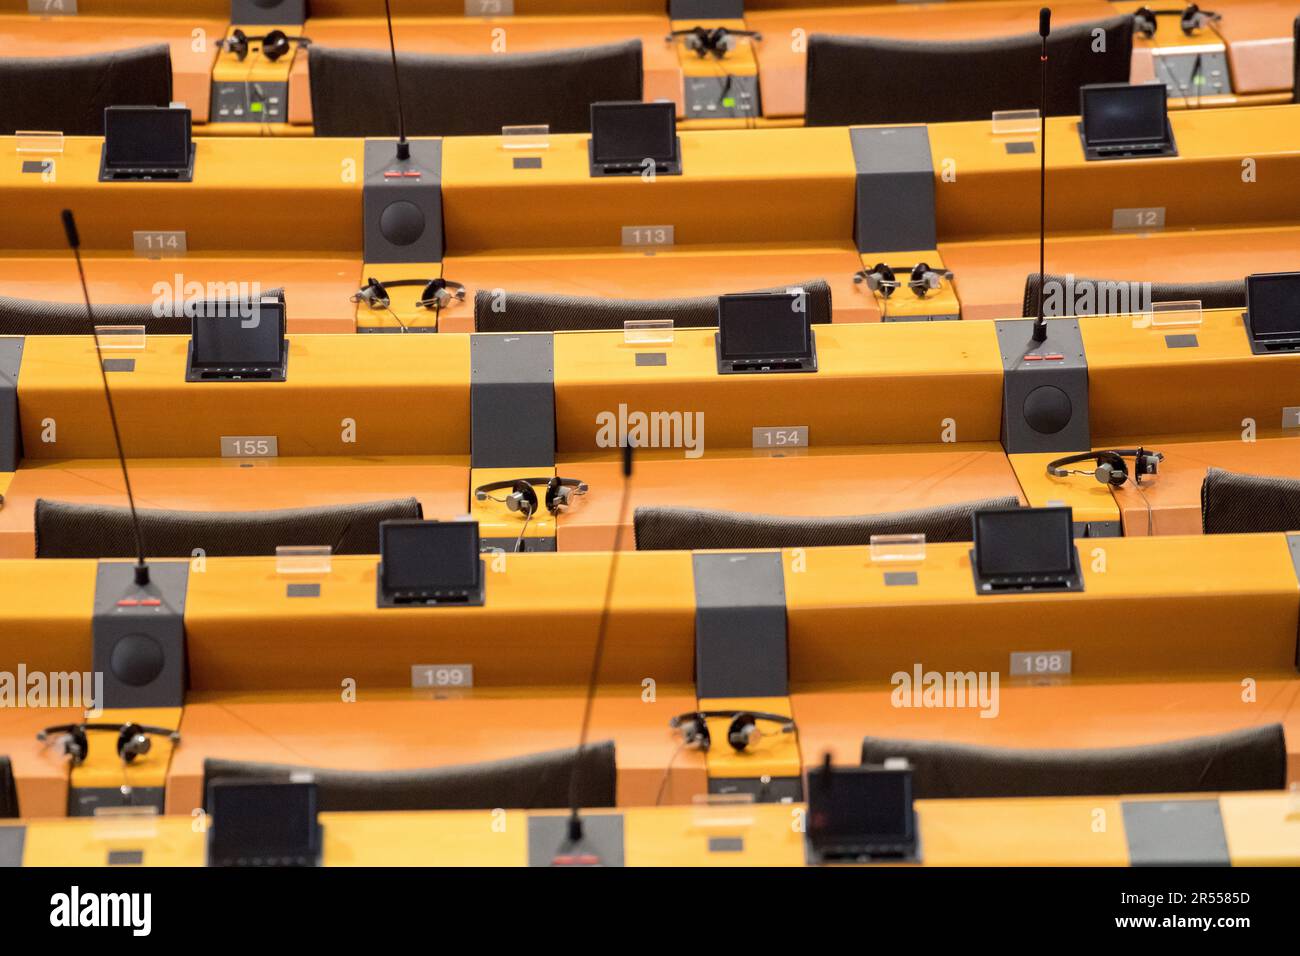 L'emiciclo del Parlamento europeo nell'edificio Paul-Henri Spaak della sede del Parlamento europeo nell'Espace Leopold / Leopoldruimte nel Qu europeo Foto Stock